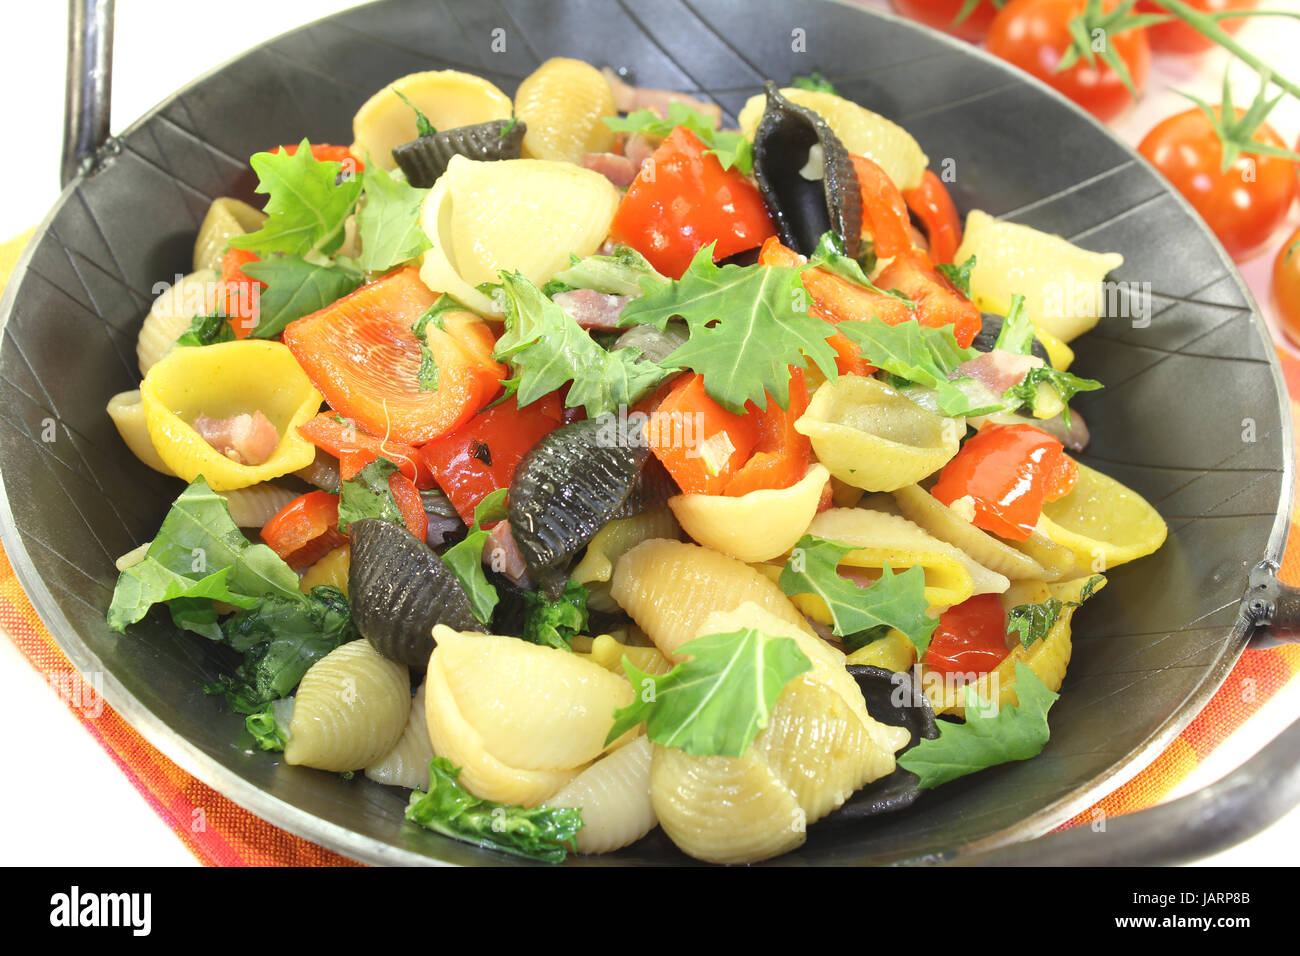 Nudelpfanne mit Paprika, Tomaten und Knoblauch vor hellem Hintergrund Foto Stock